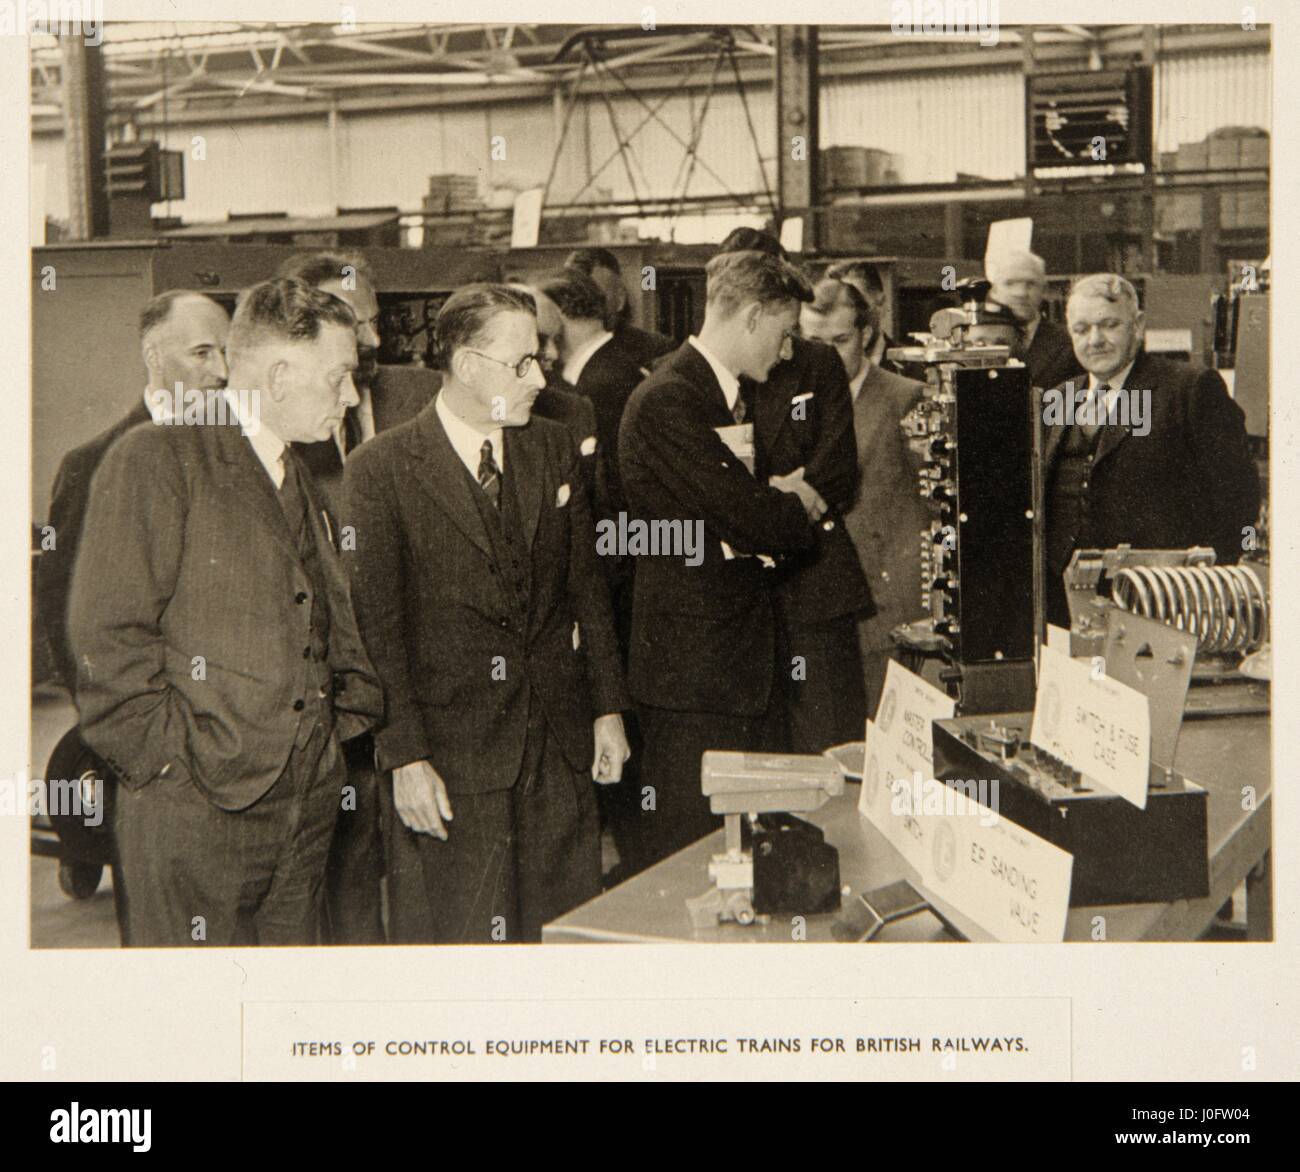 Los hombres mirar una exposición de equipos de control de trenes eléctricos para los ferrocarriles británicos Foto de stock